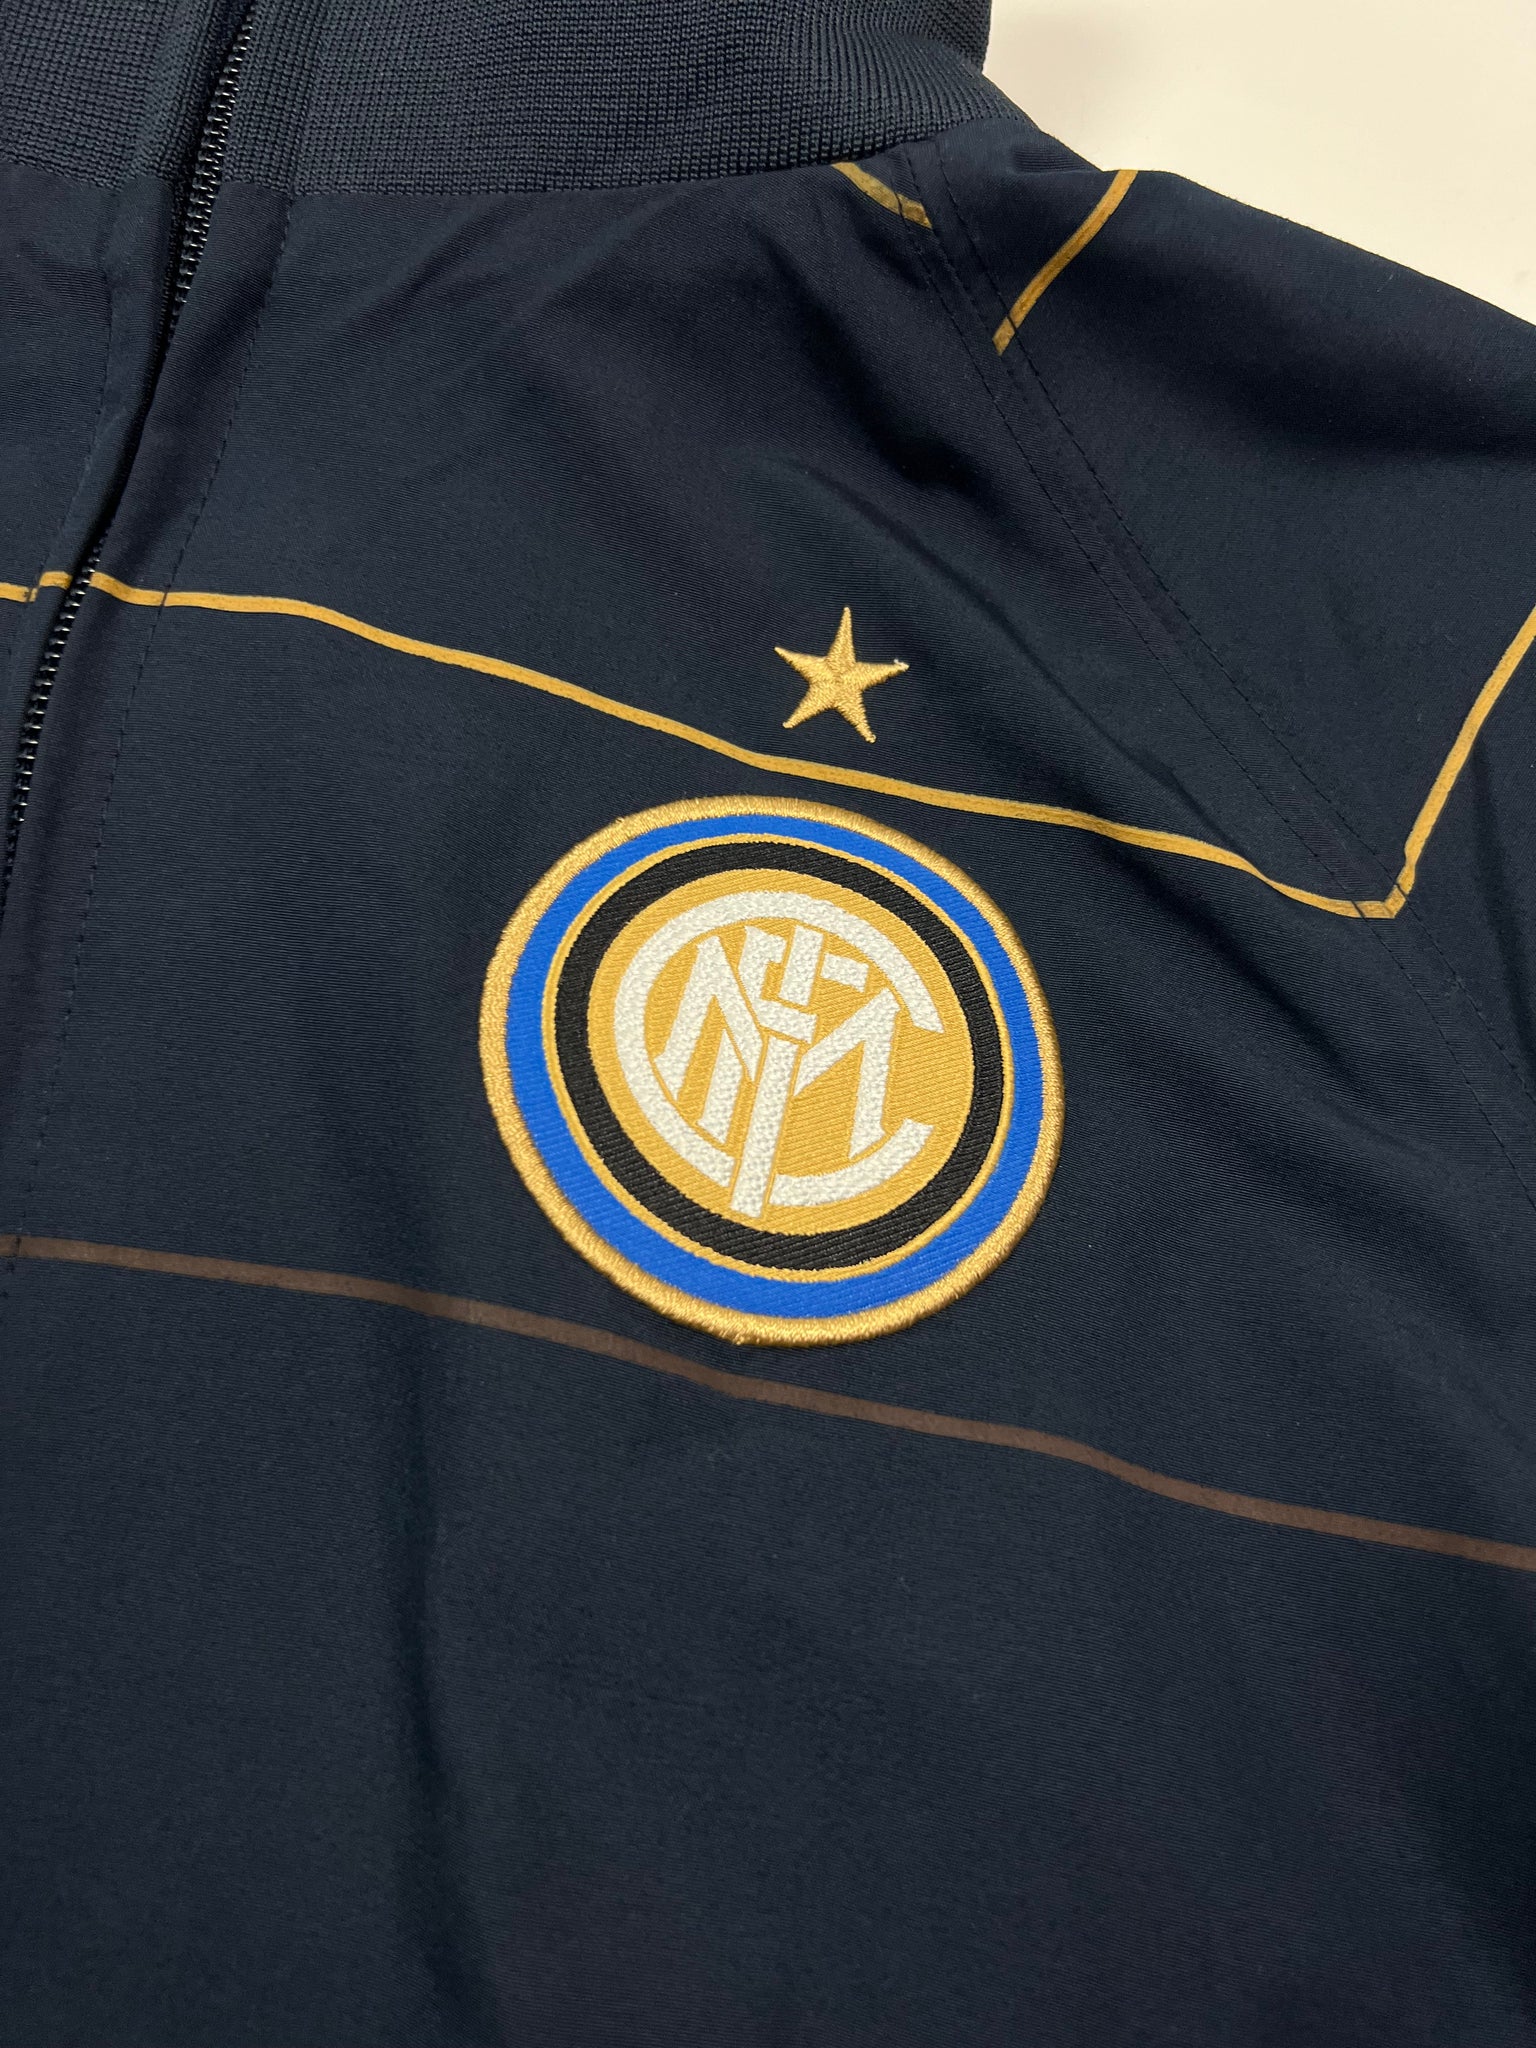 Nike Inter Milan Tracksuit (L)